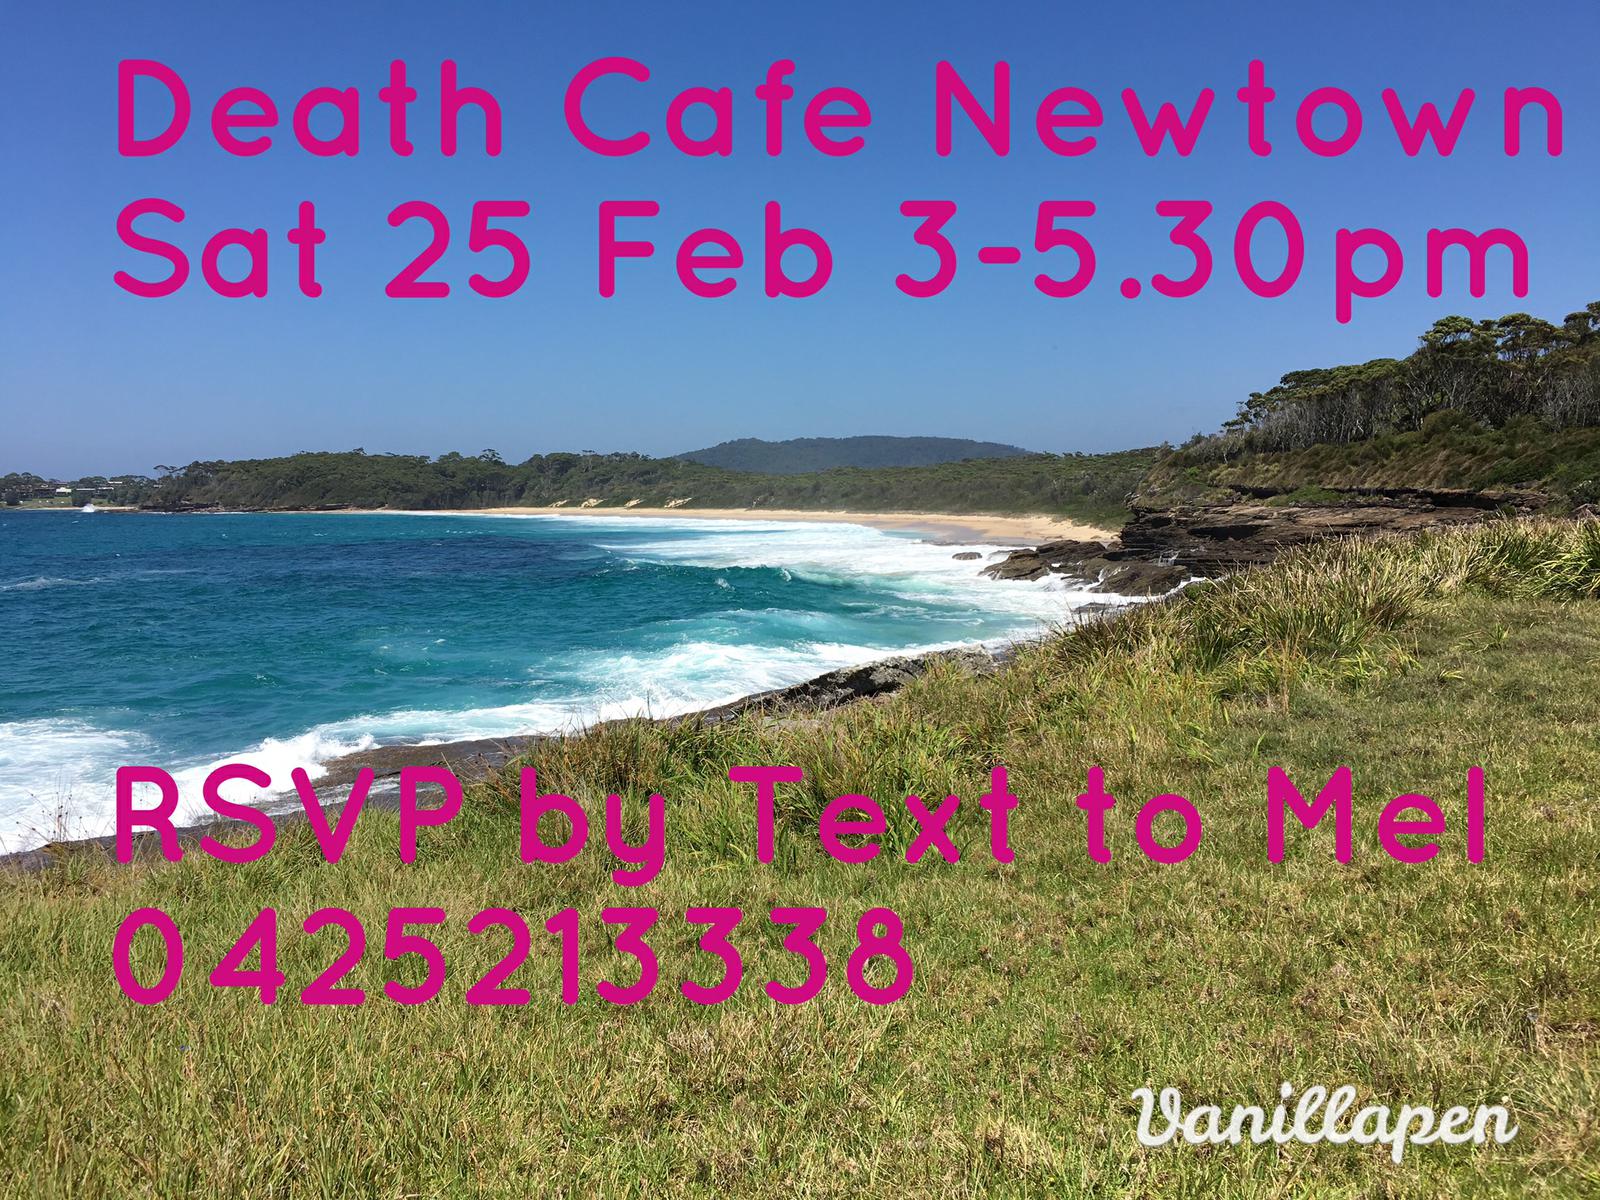 Death Cafe Newtown